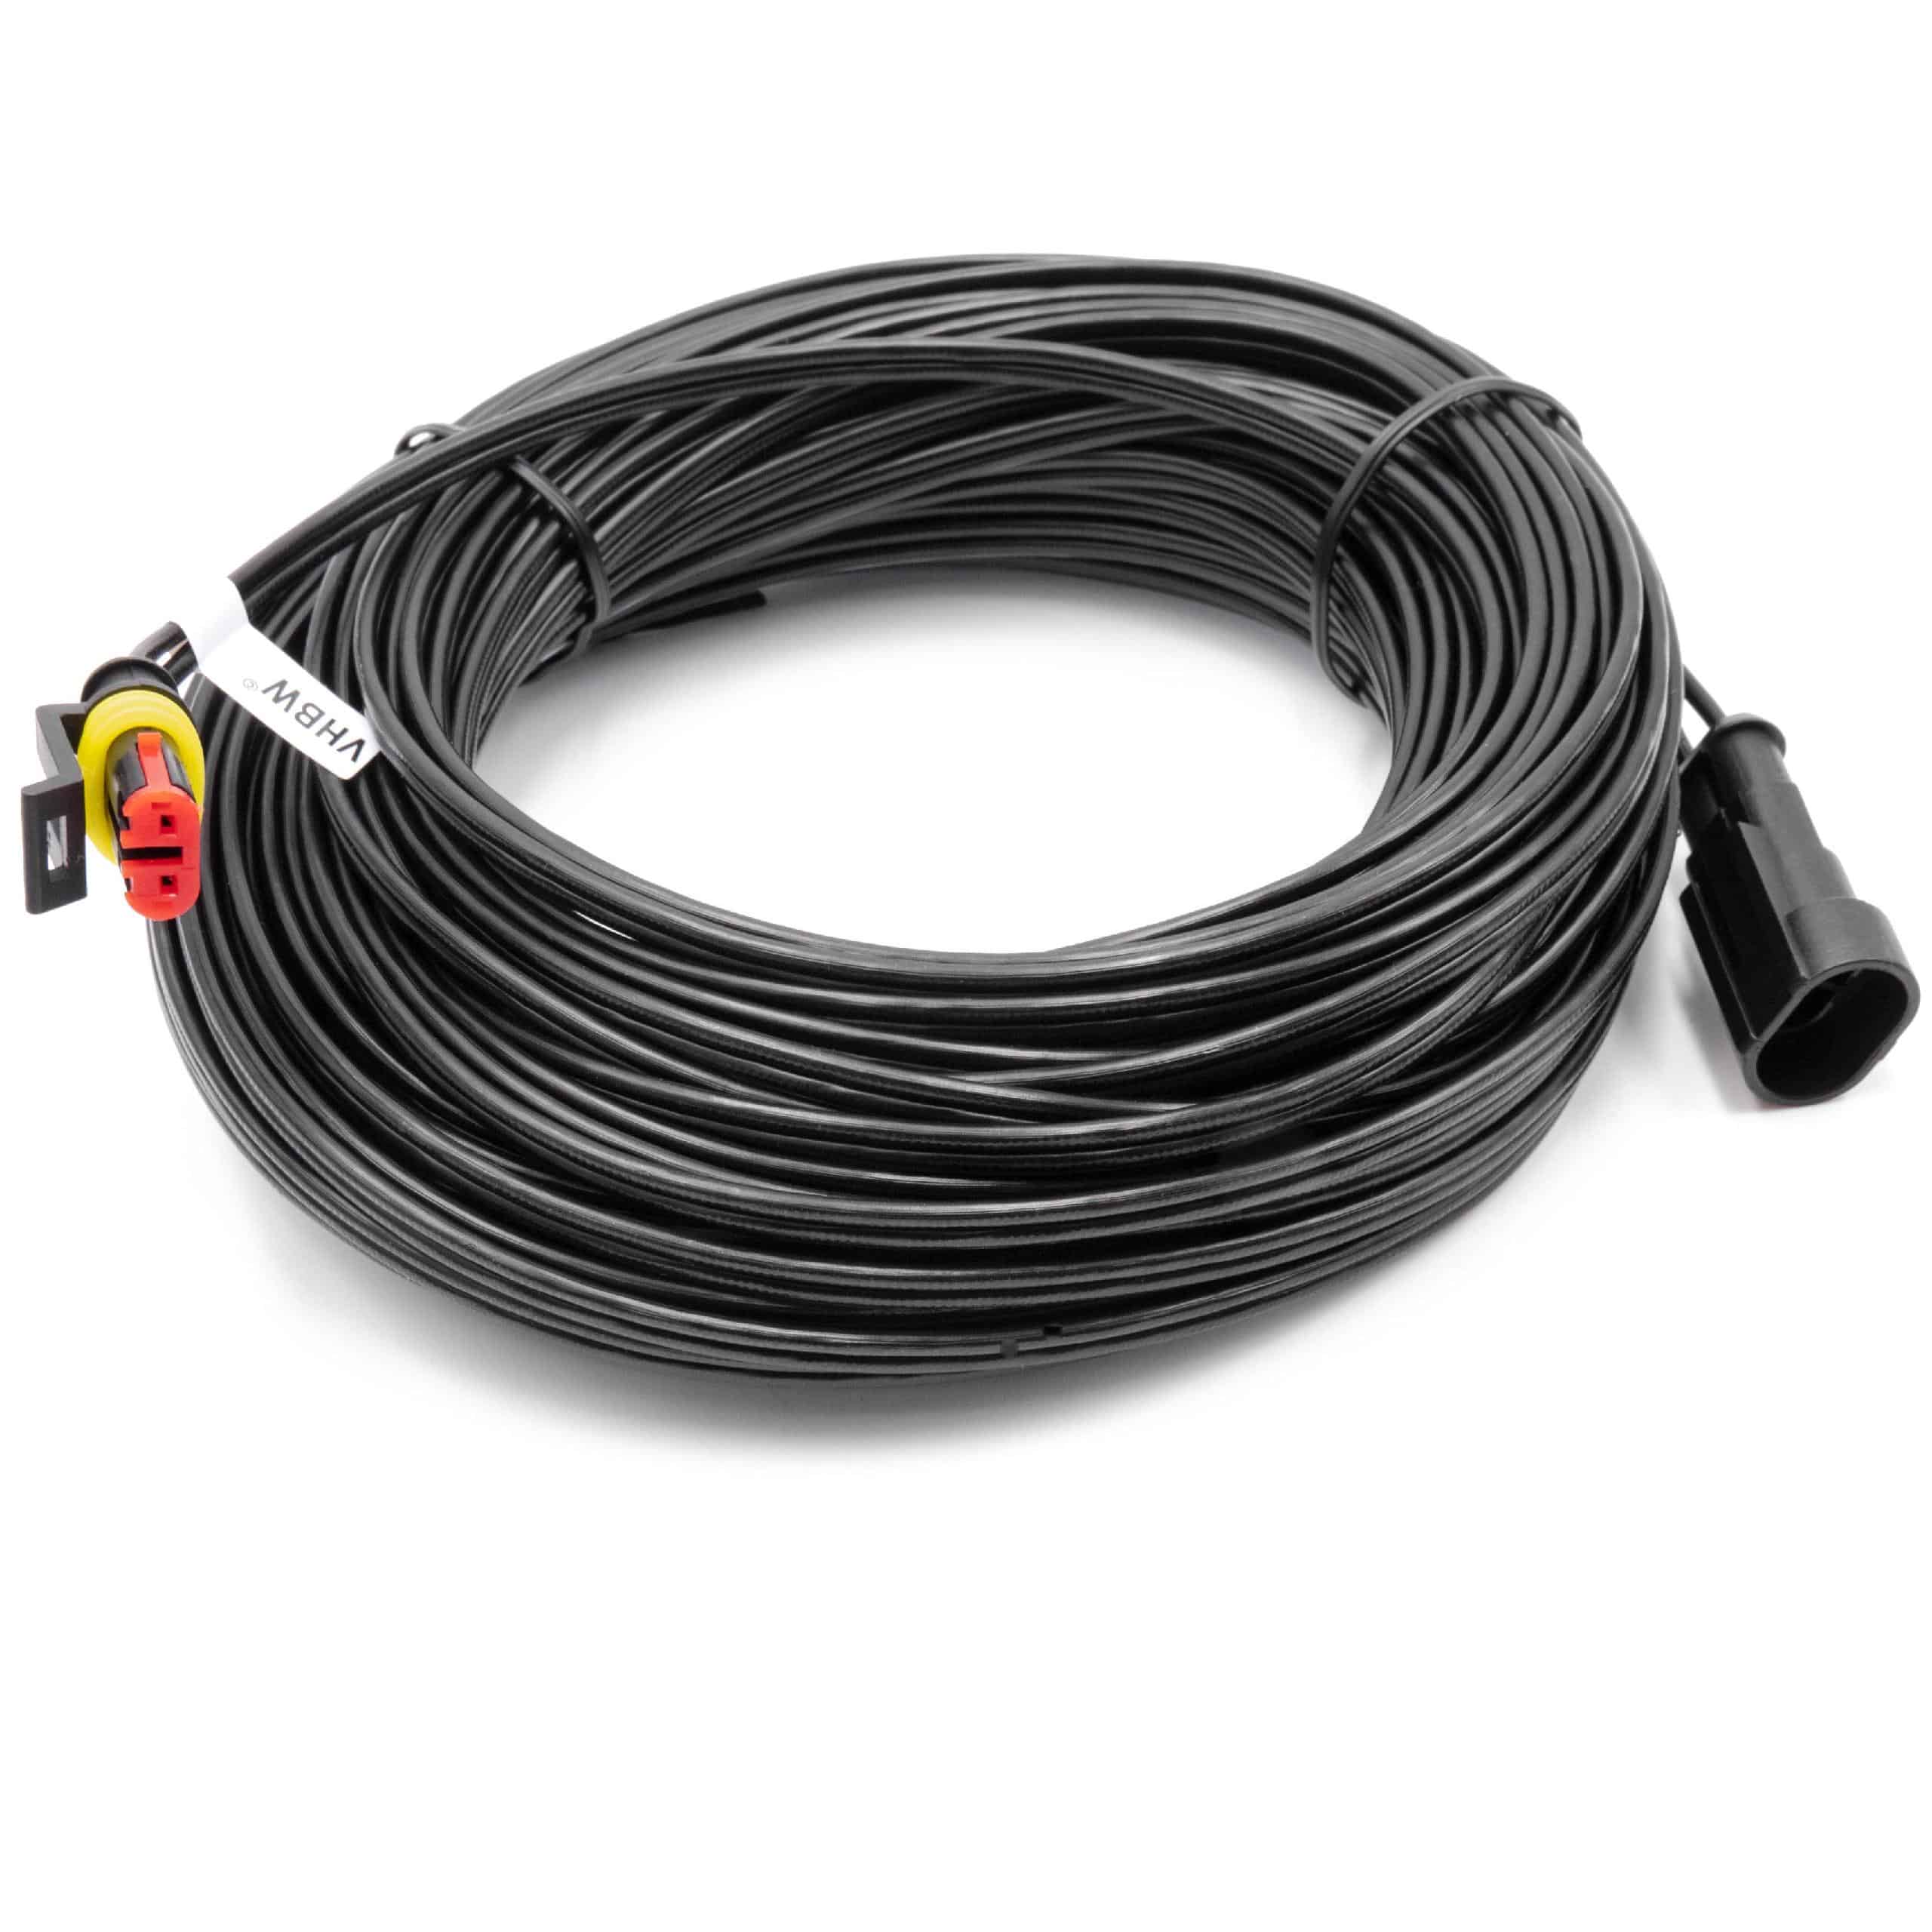 Câble de rechange pour Honda 31786-VP7-013 pour robot tondeuse - Câble basse tension, 20 m